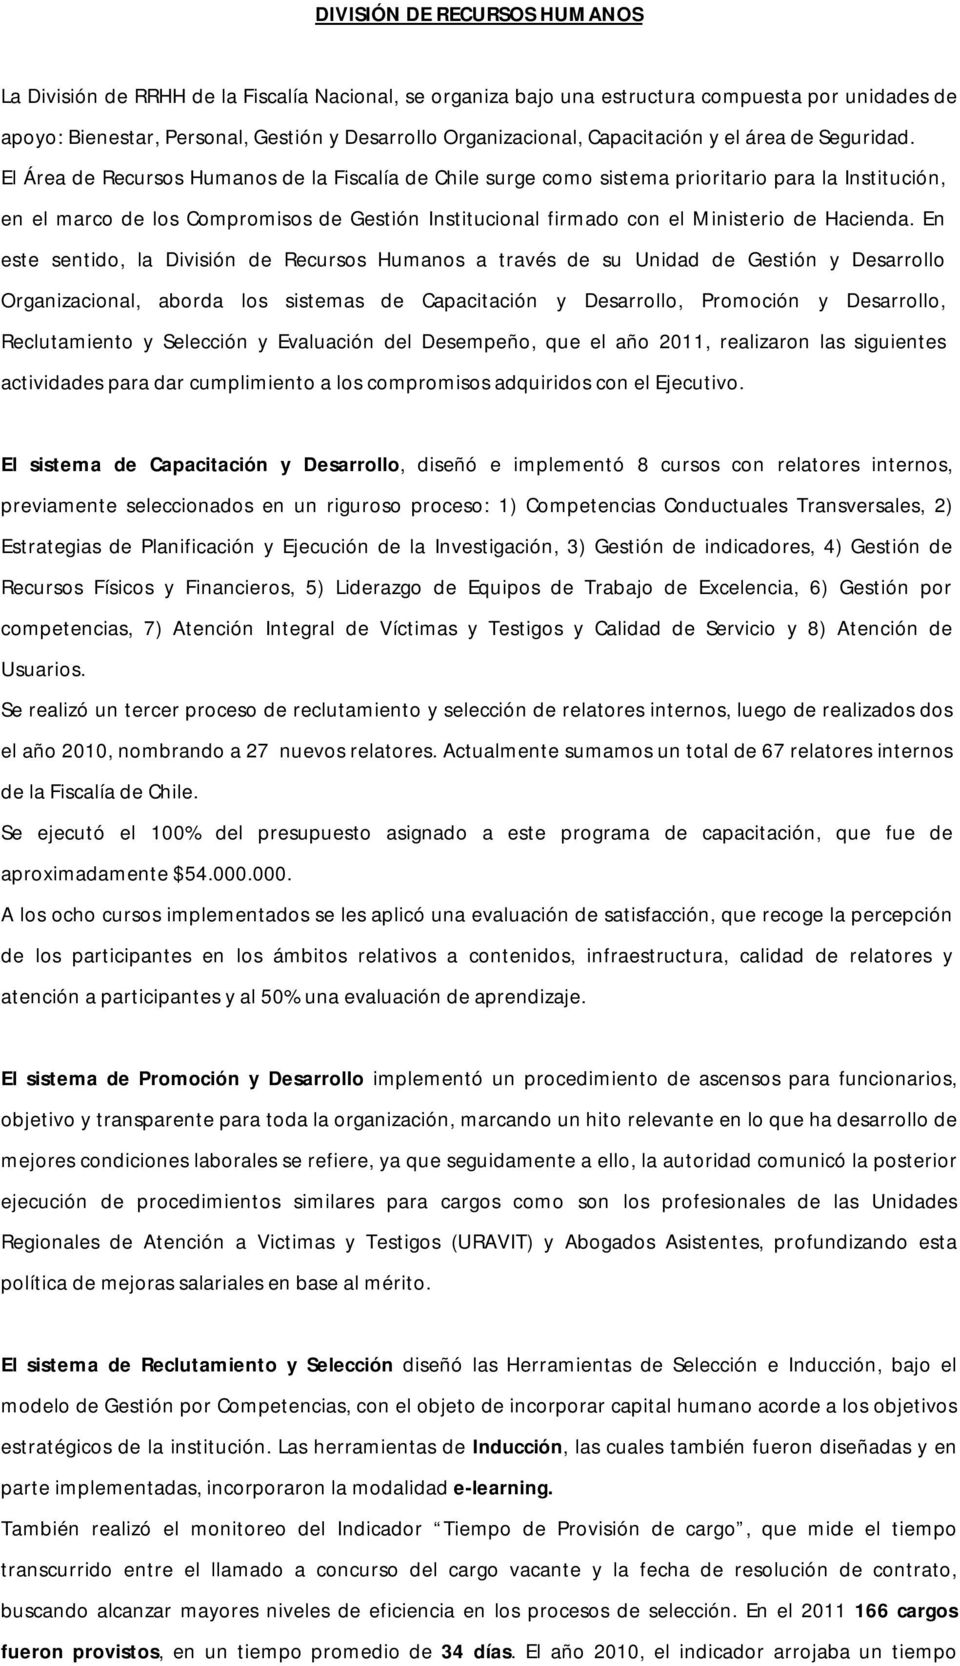 El Área de Recursos Humanos de la Fiscalía de Chile surge como sistema prioritario para la Institución, en el marco de los Compromisos de Gestión Institucional firmado con el Ministerio de Hacienda.